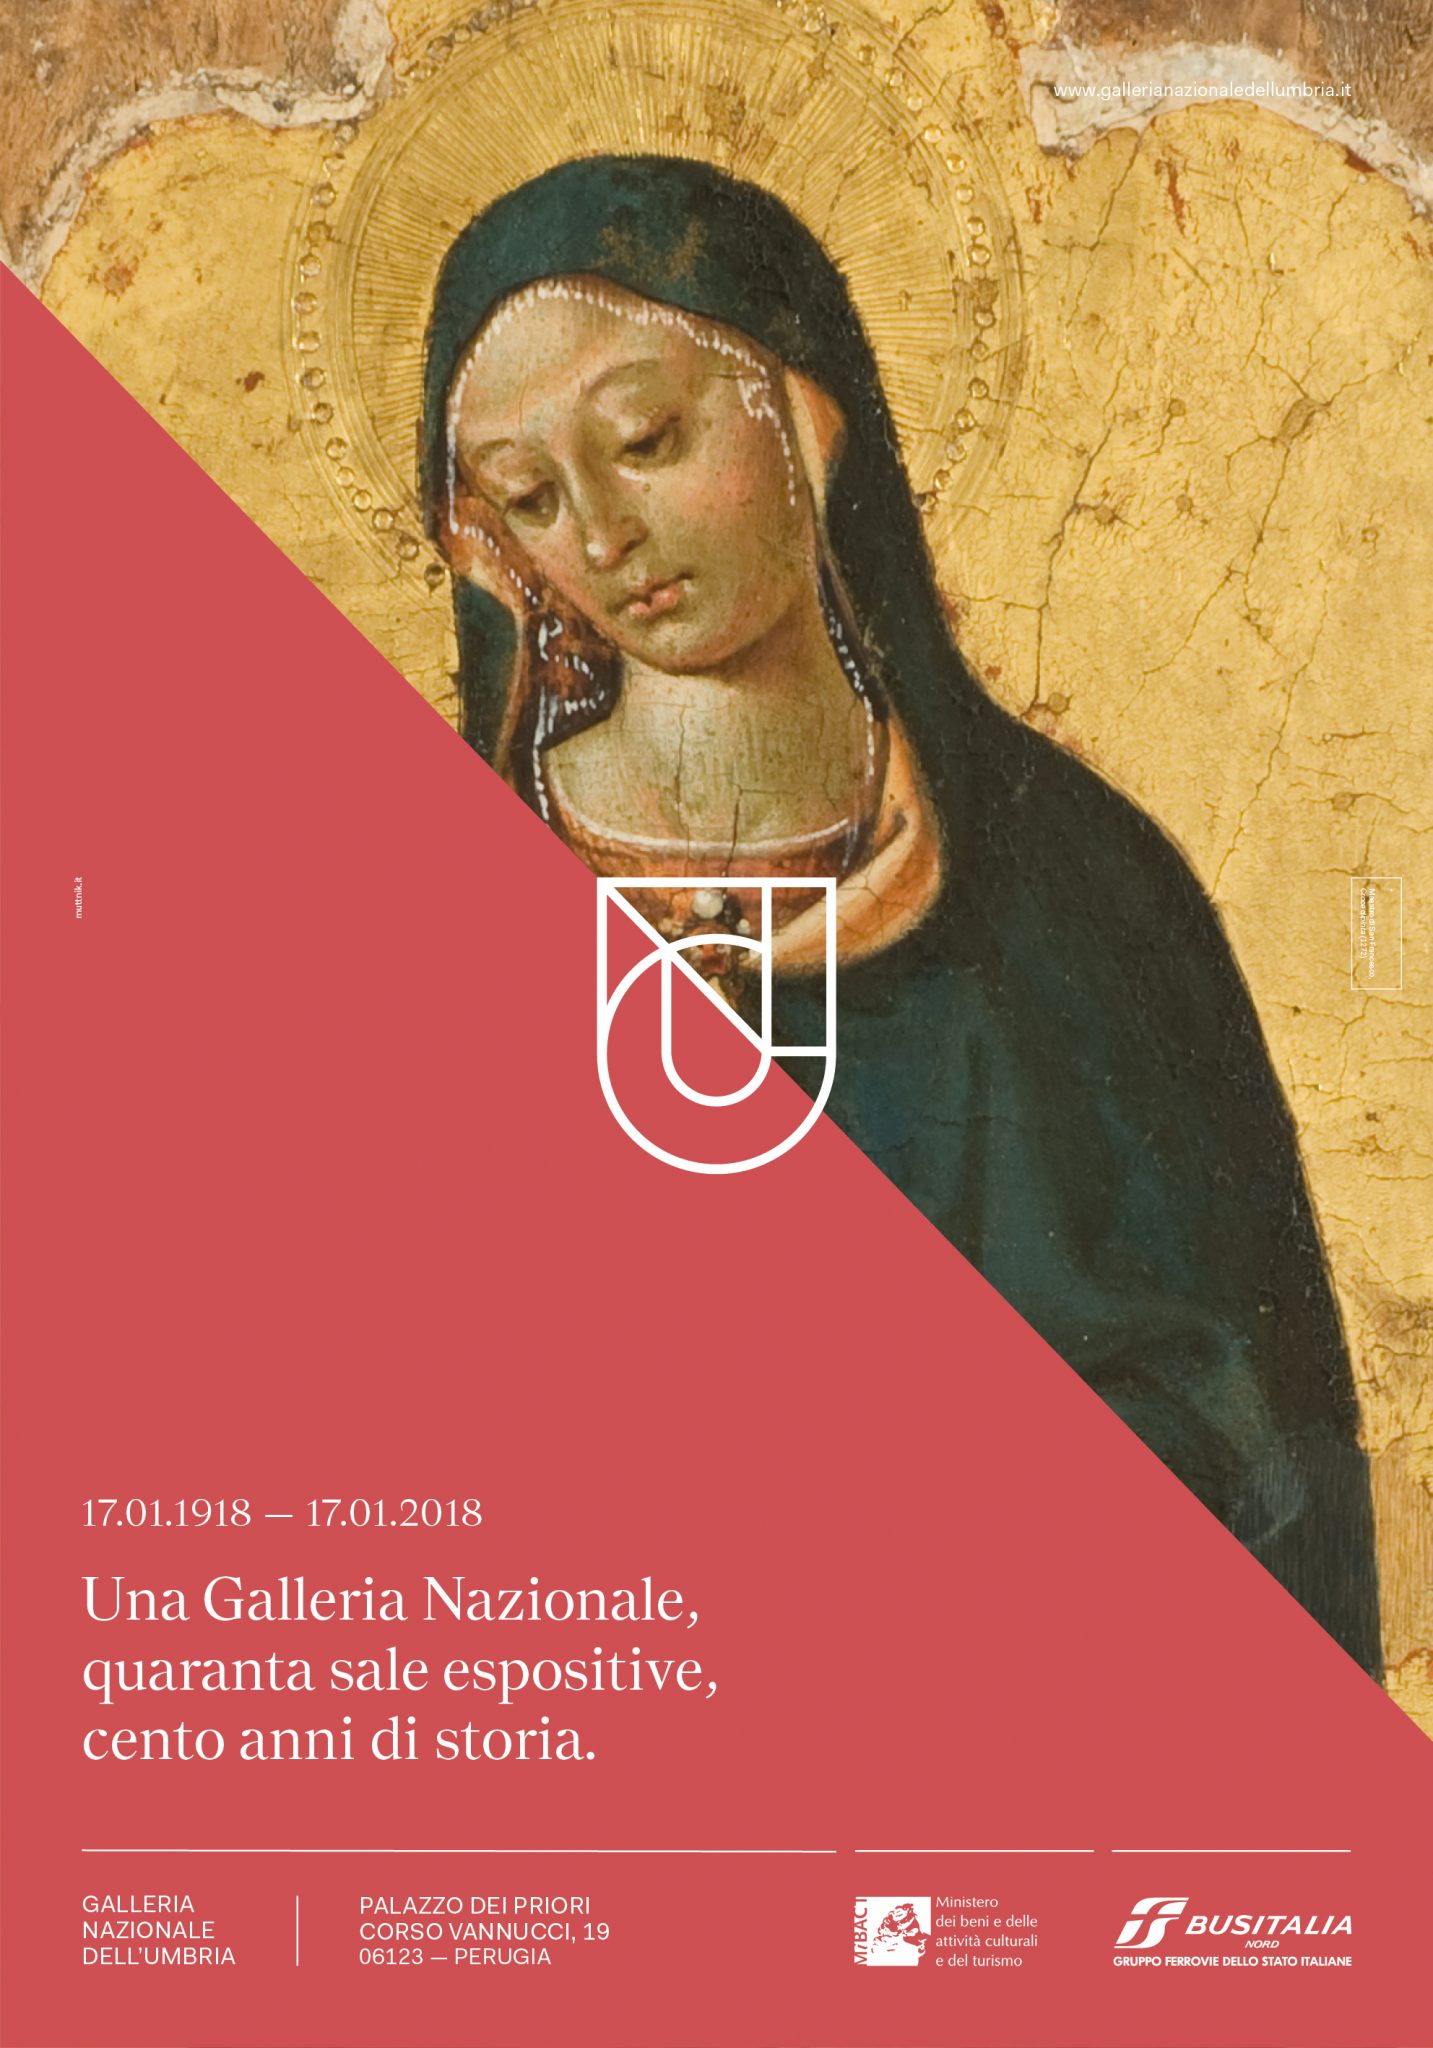 European Design Awards 2018. Premio al nuovo logo della Galleria Nazionale dell’Umbria